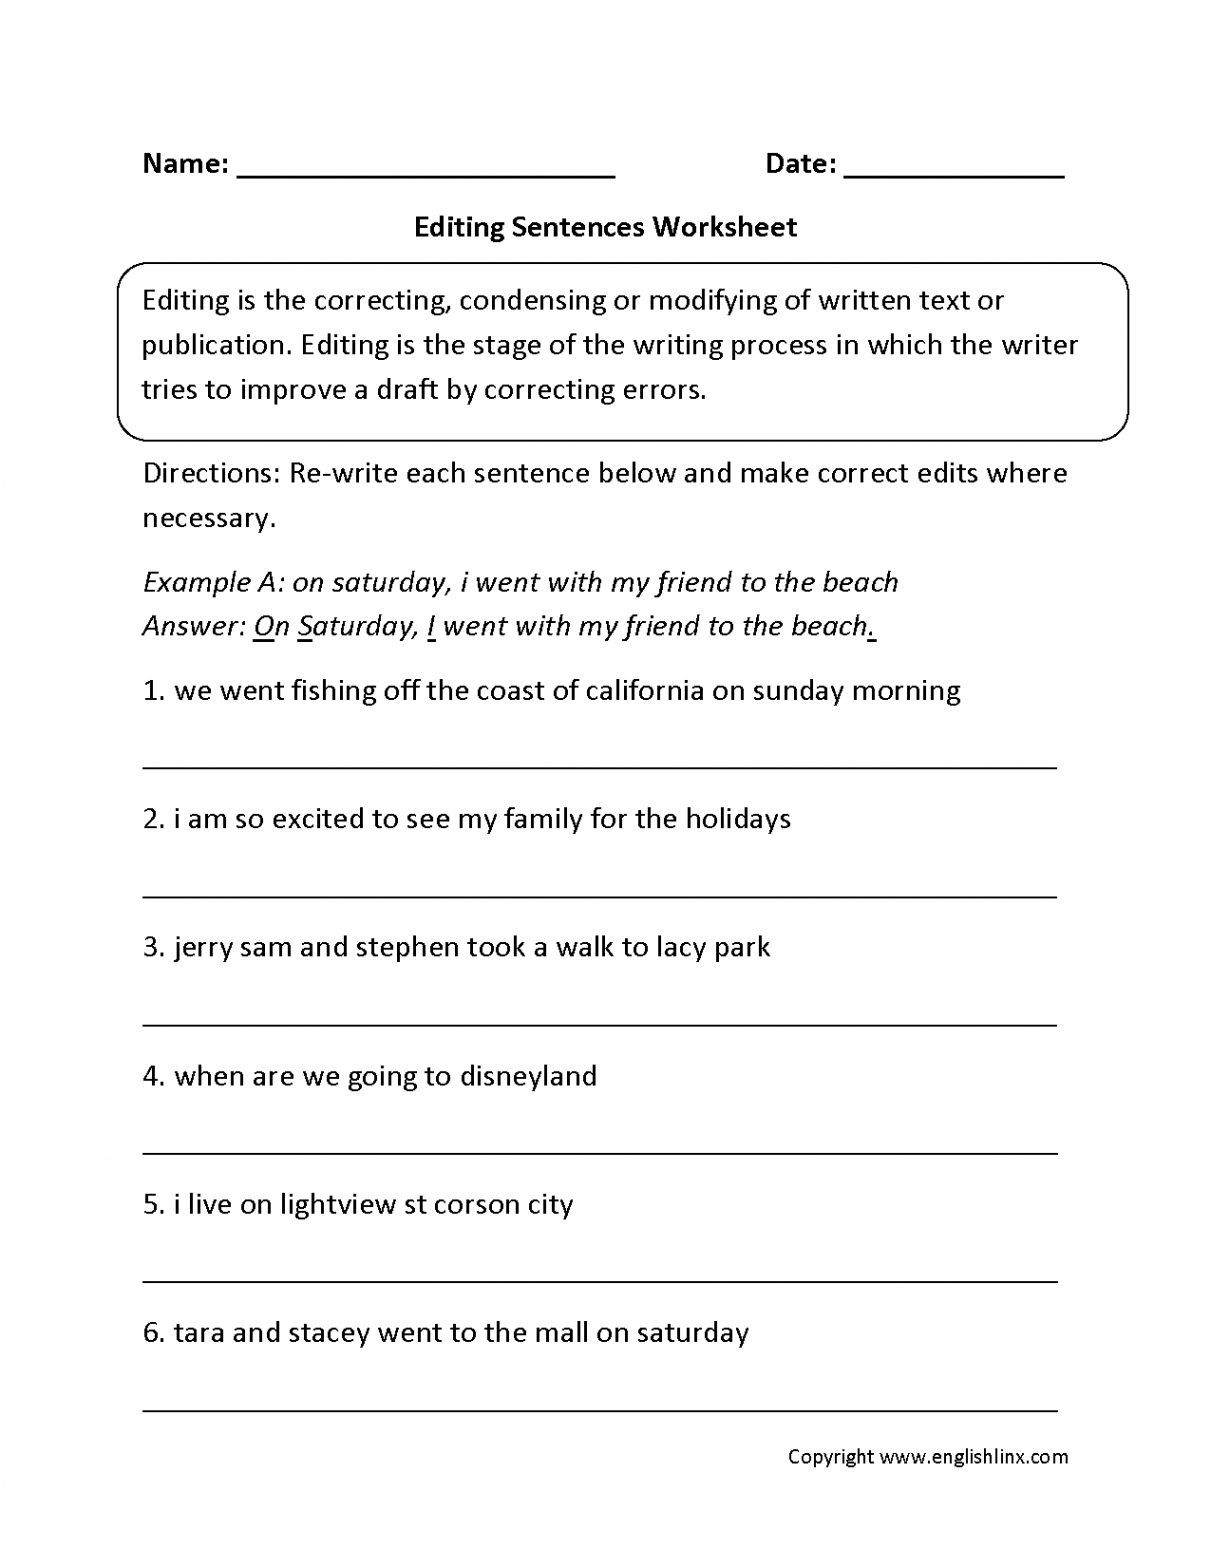 Writing Worksheets  Editing Worksheets  Sentence correction